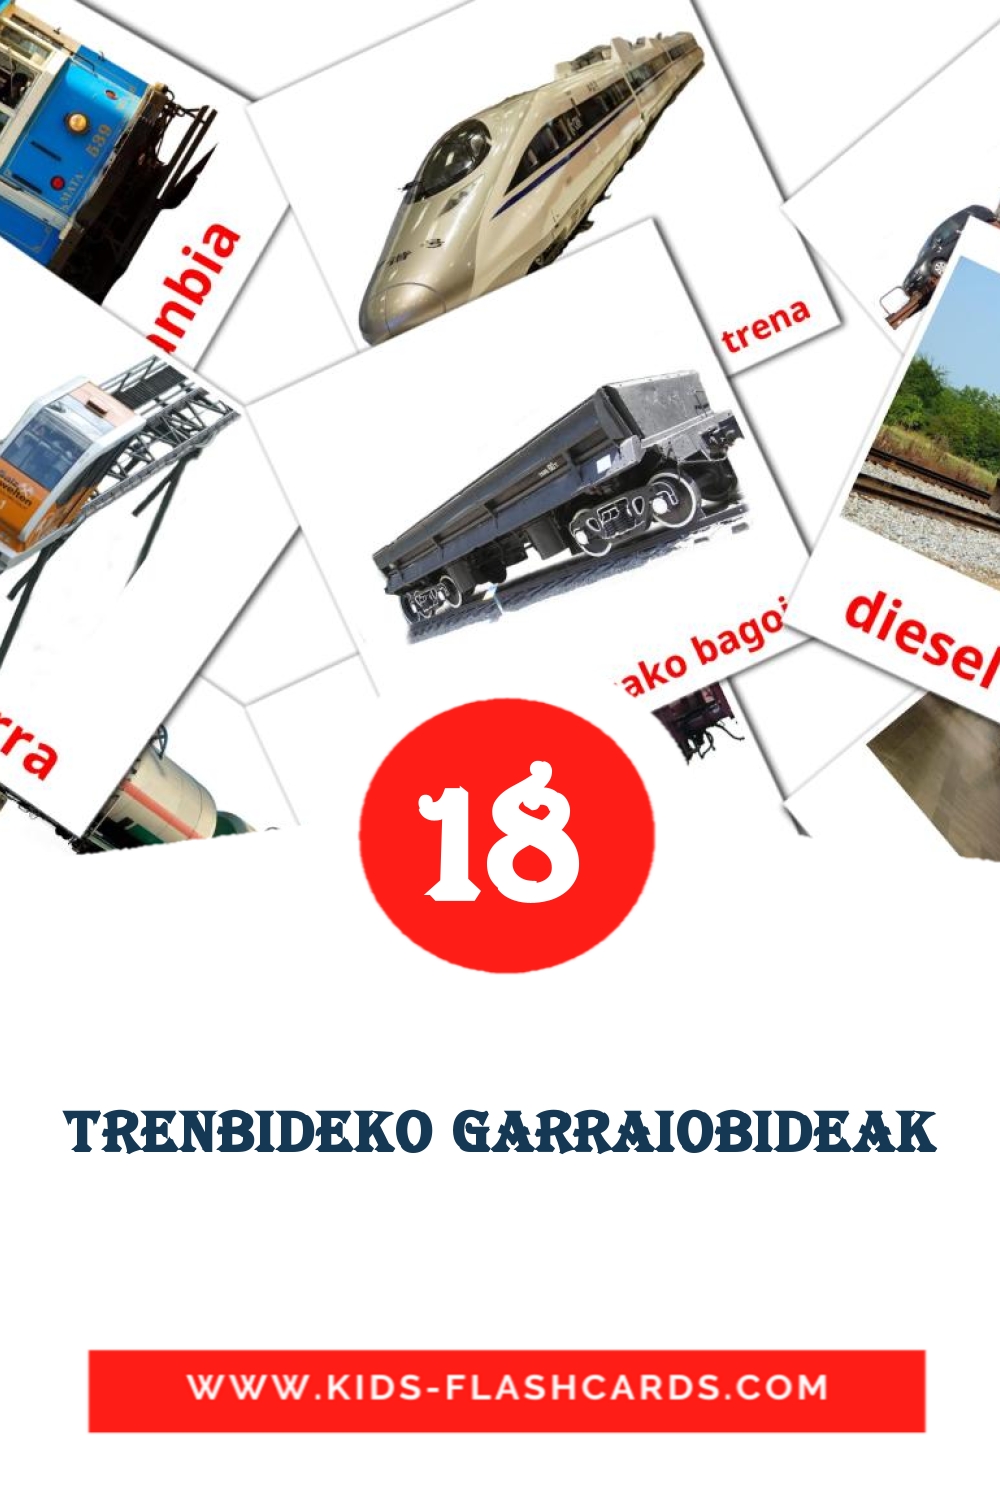 18 Trenbideko garraiobideak Bildkarten für den Kindergarten auf Baskische